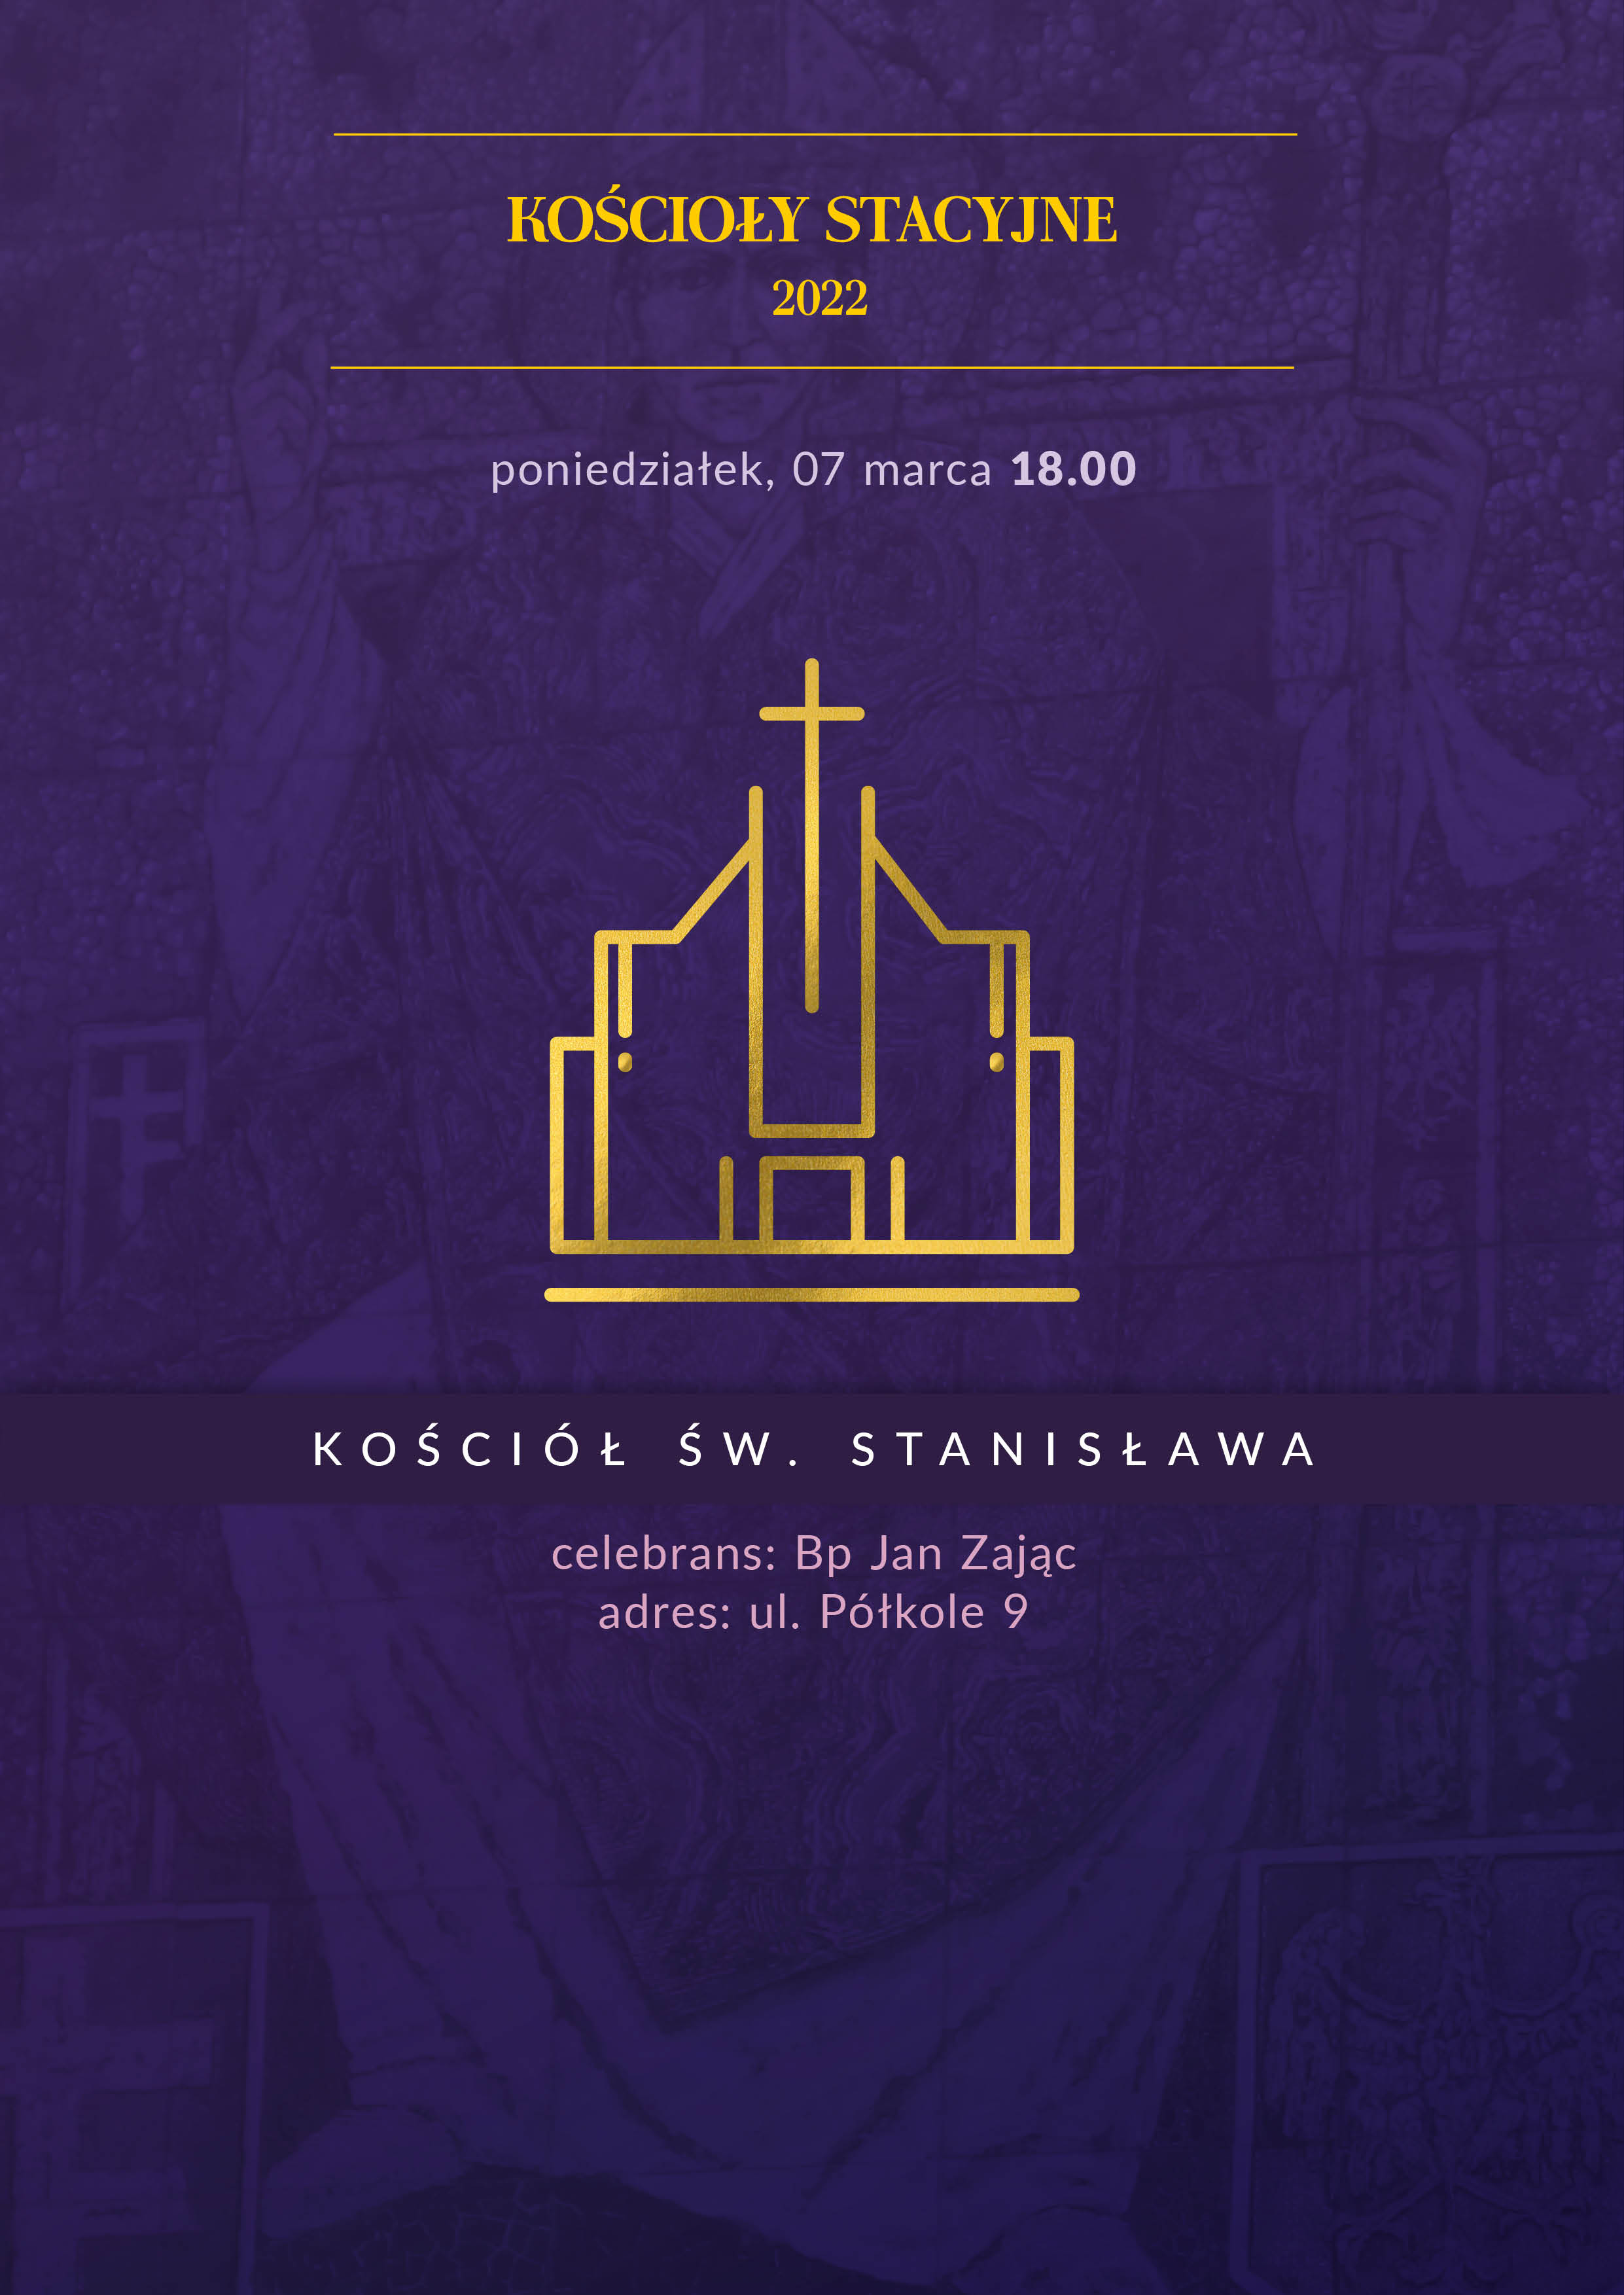 Liturgia stacyjna w kościele św. Stanisława na Dąbiu